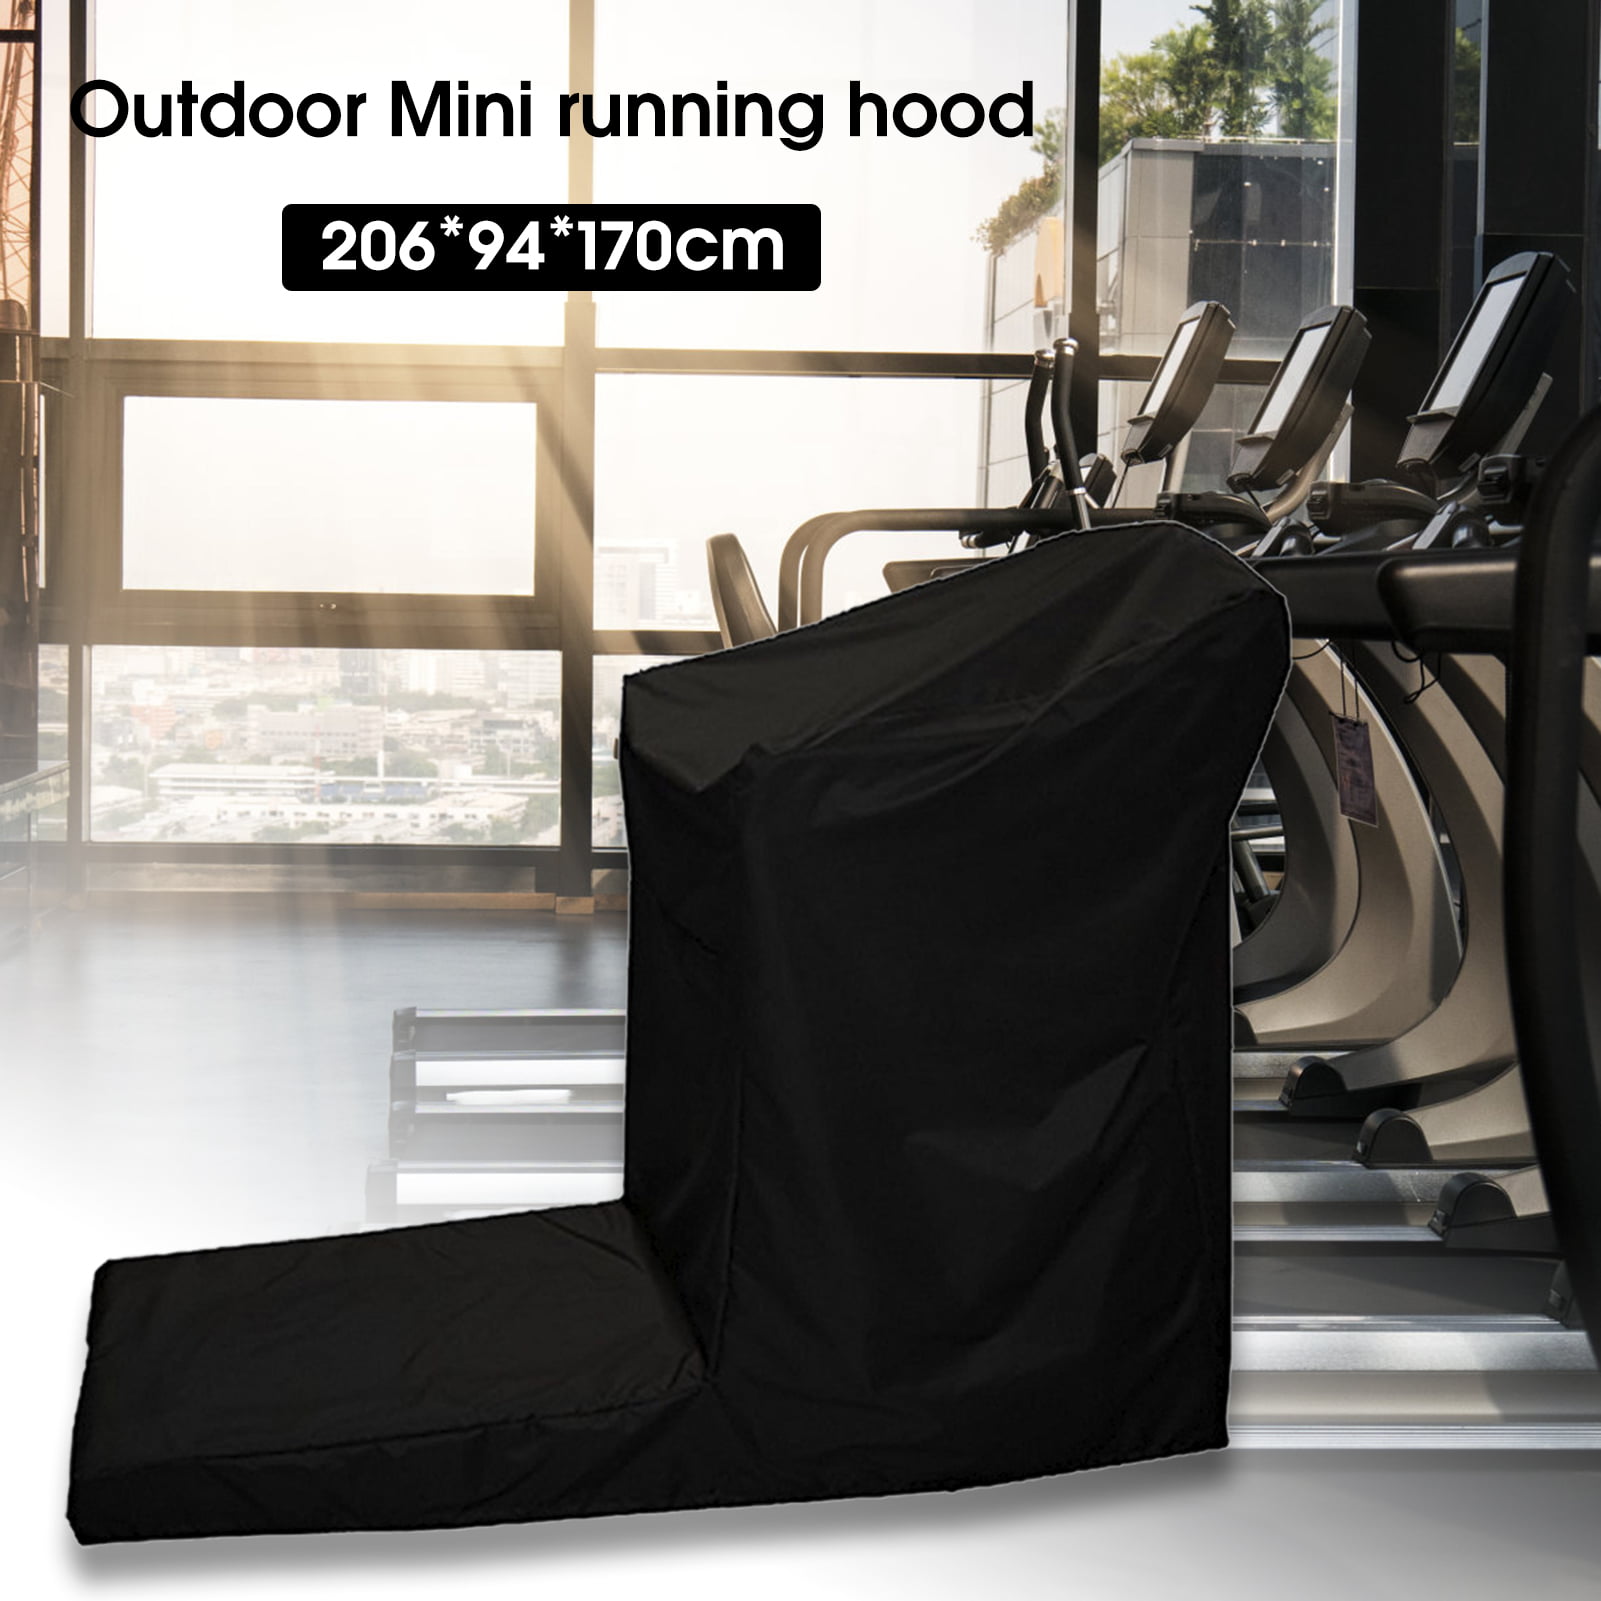 L Type Indoor Outdoor Dustproof Waterproof All Purpose Running Machine Cover 